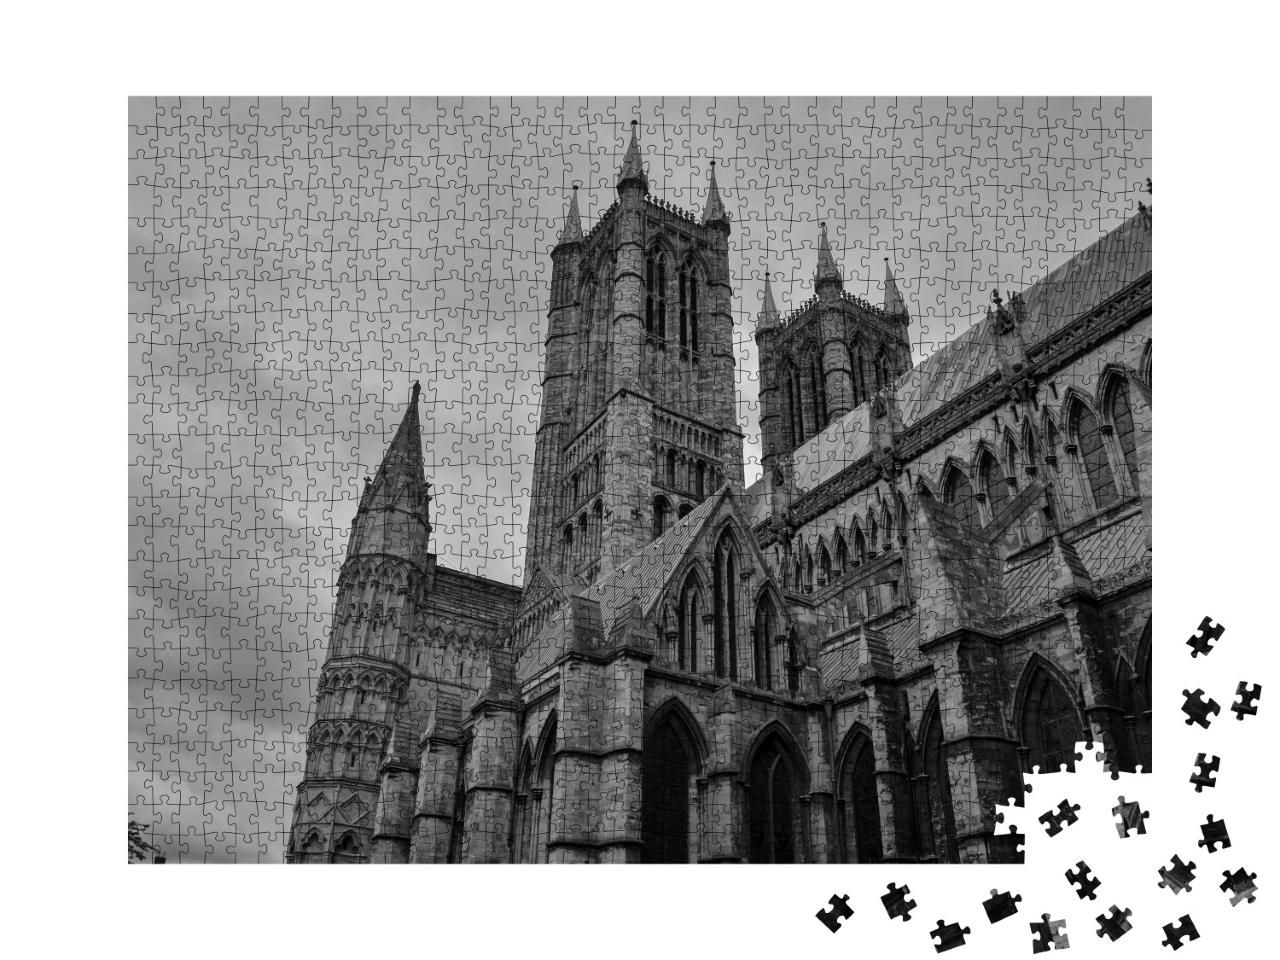 Puzzle de 1000 pièces « La cathédrale de Lincoln »